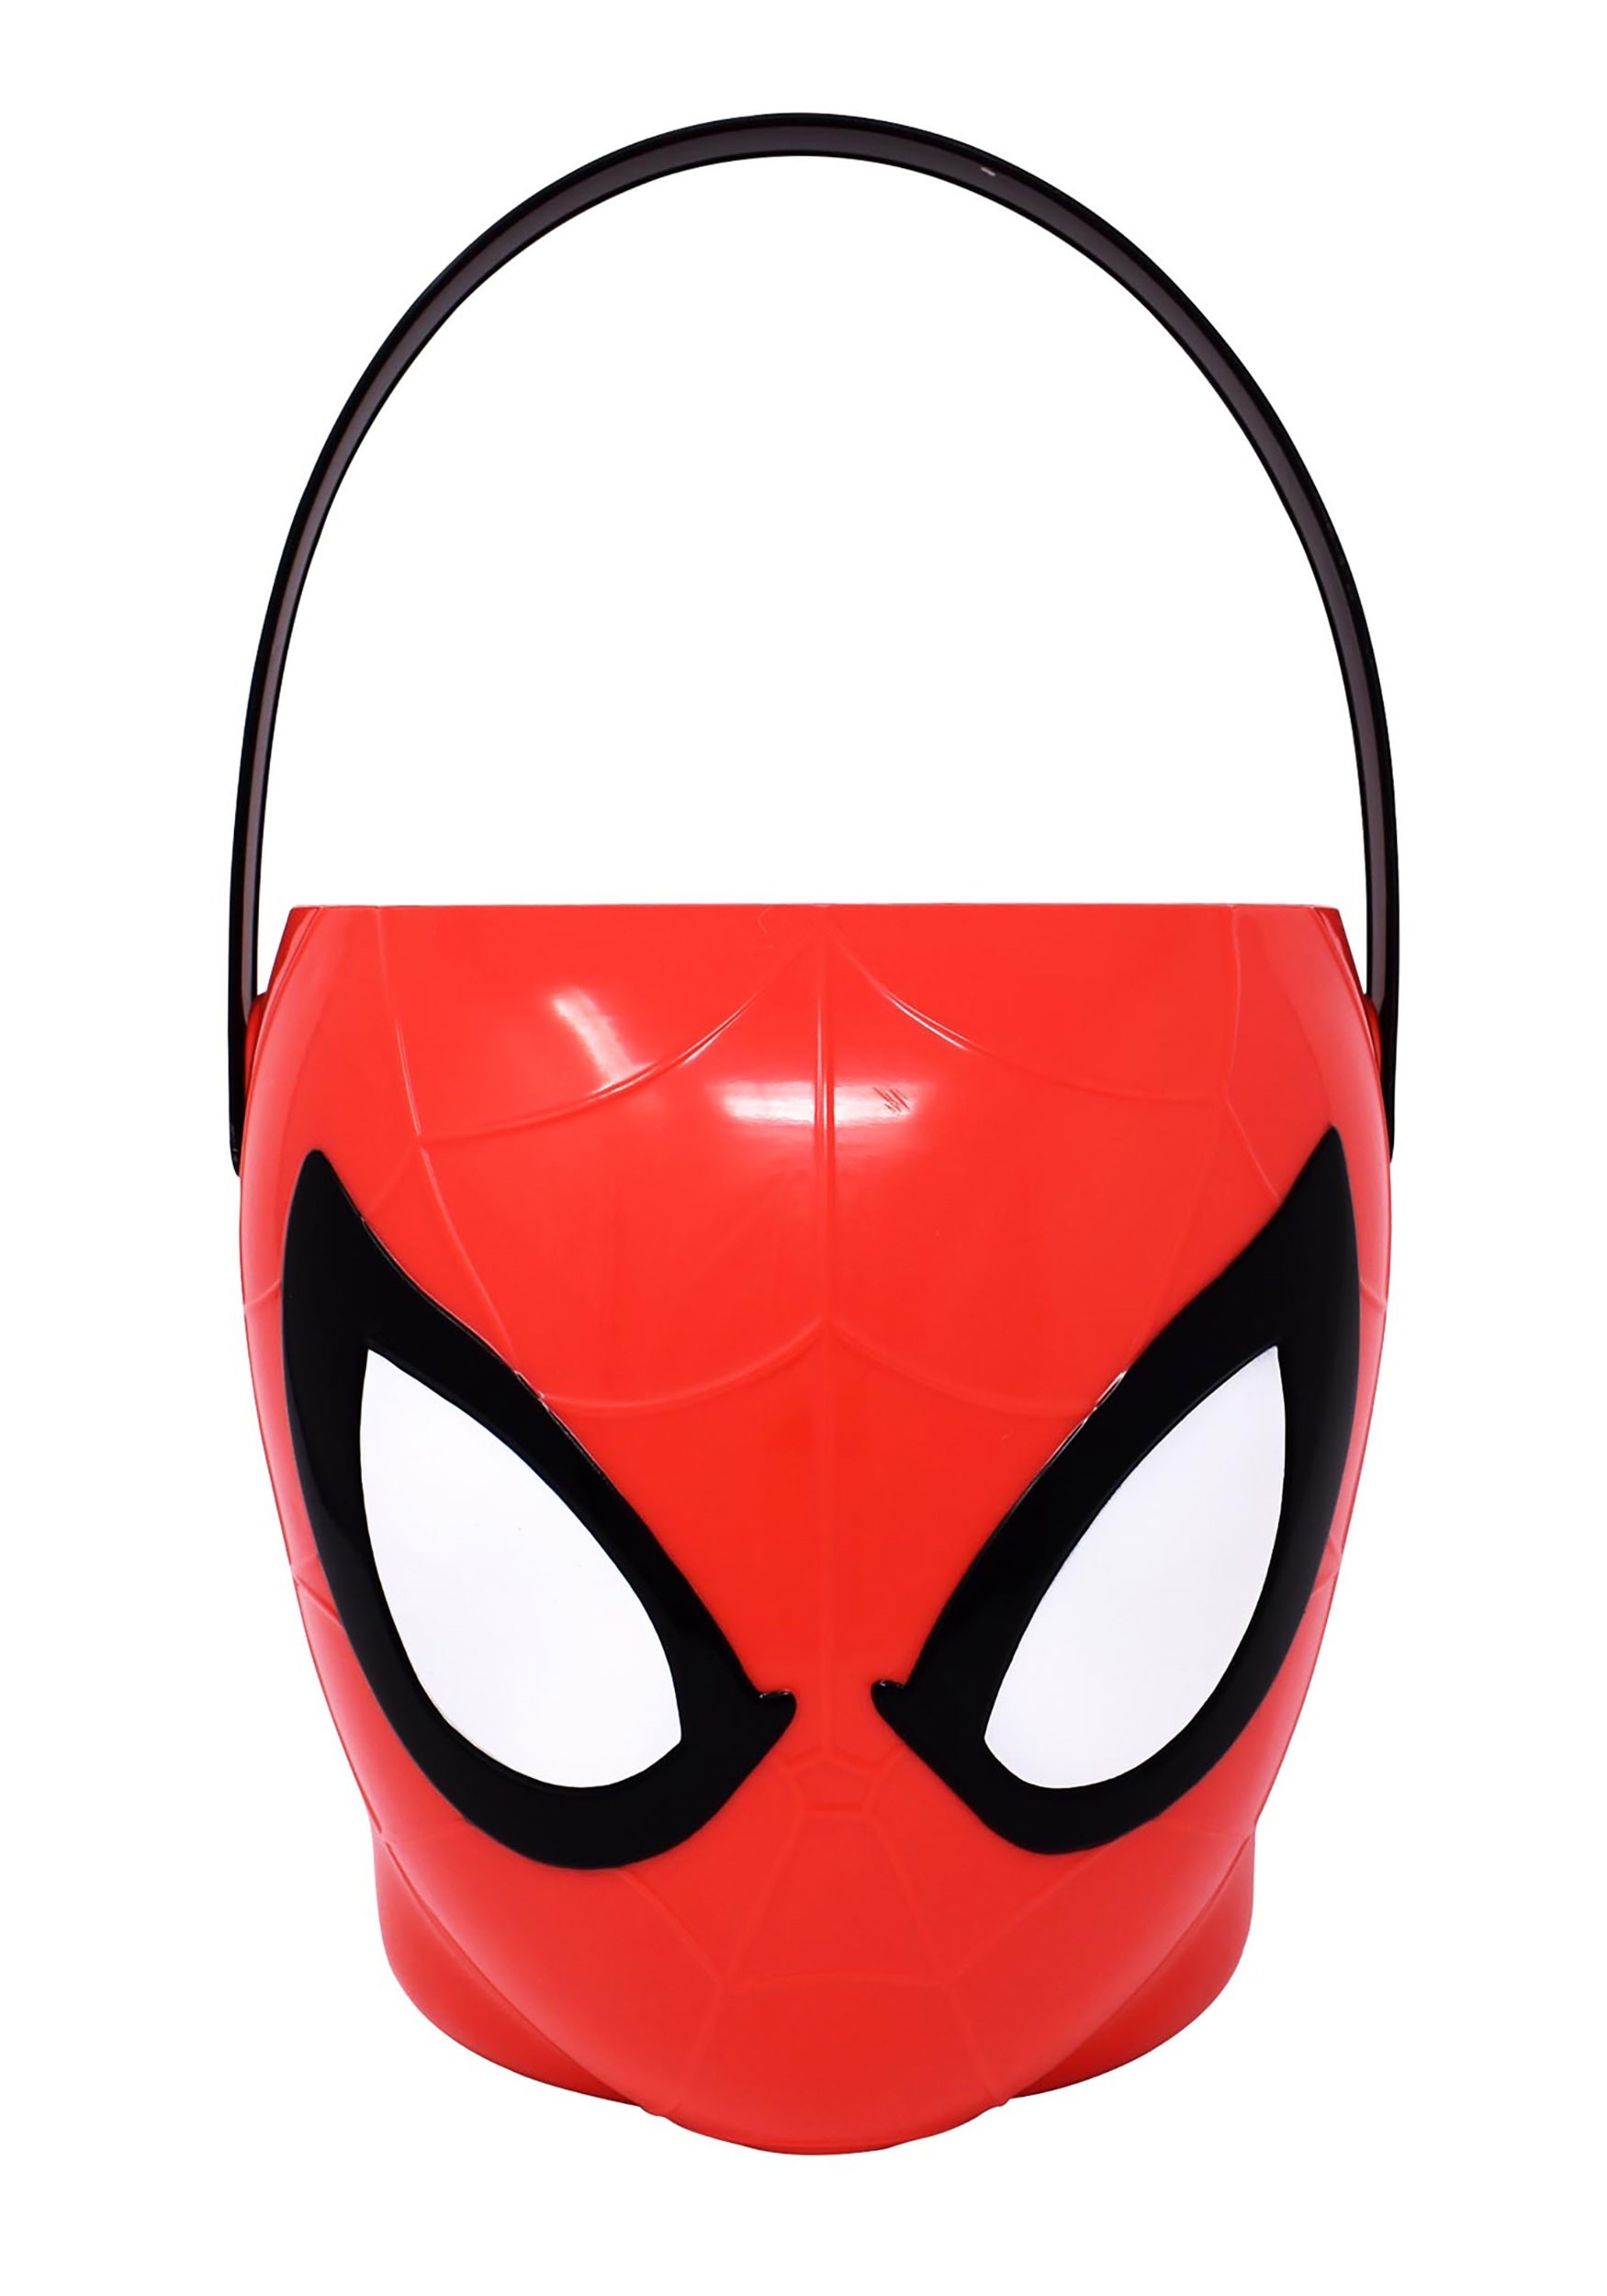 Spider-Man Easter Basket